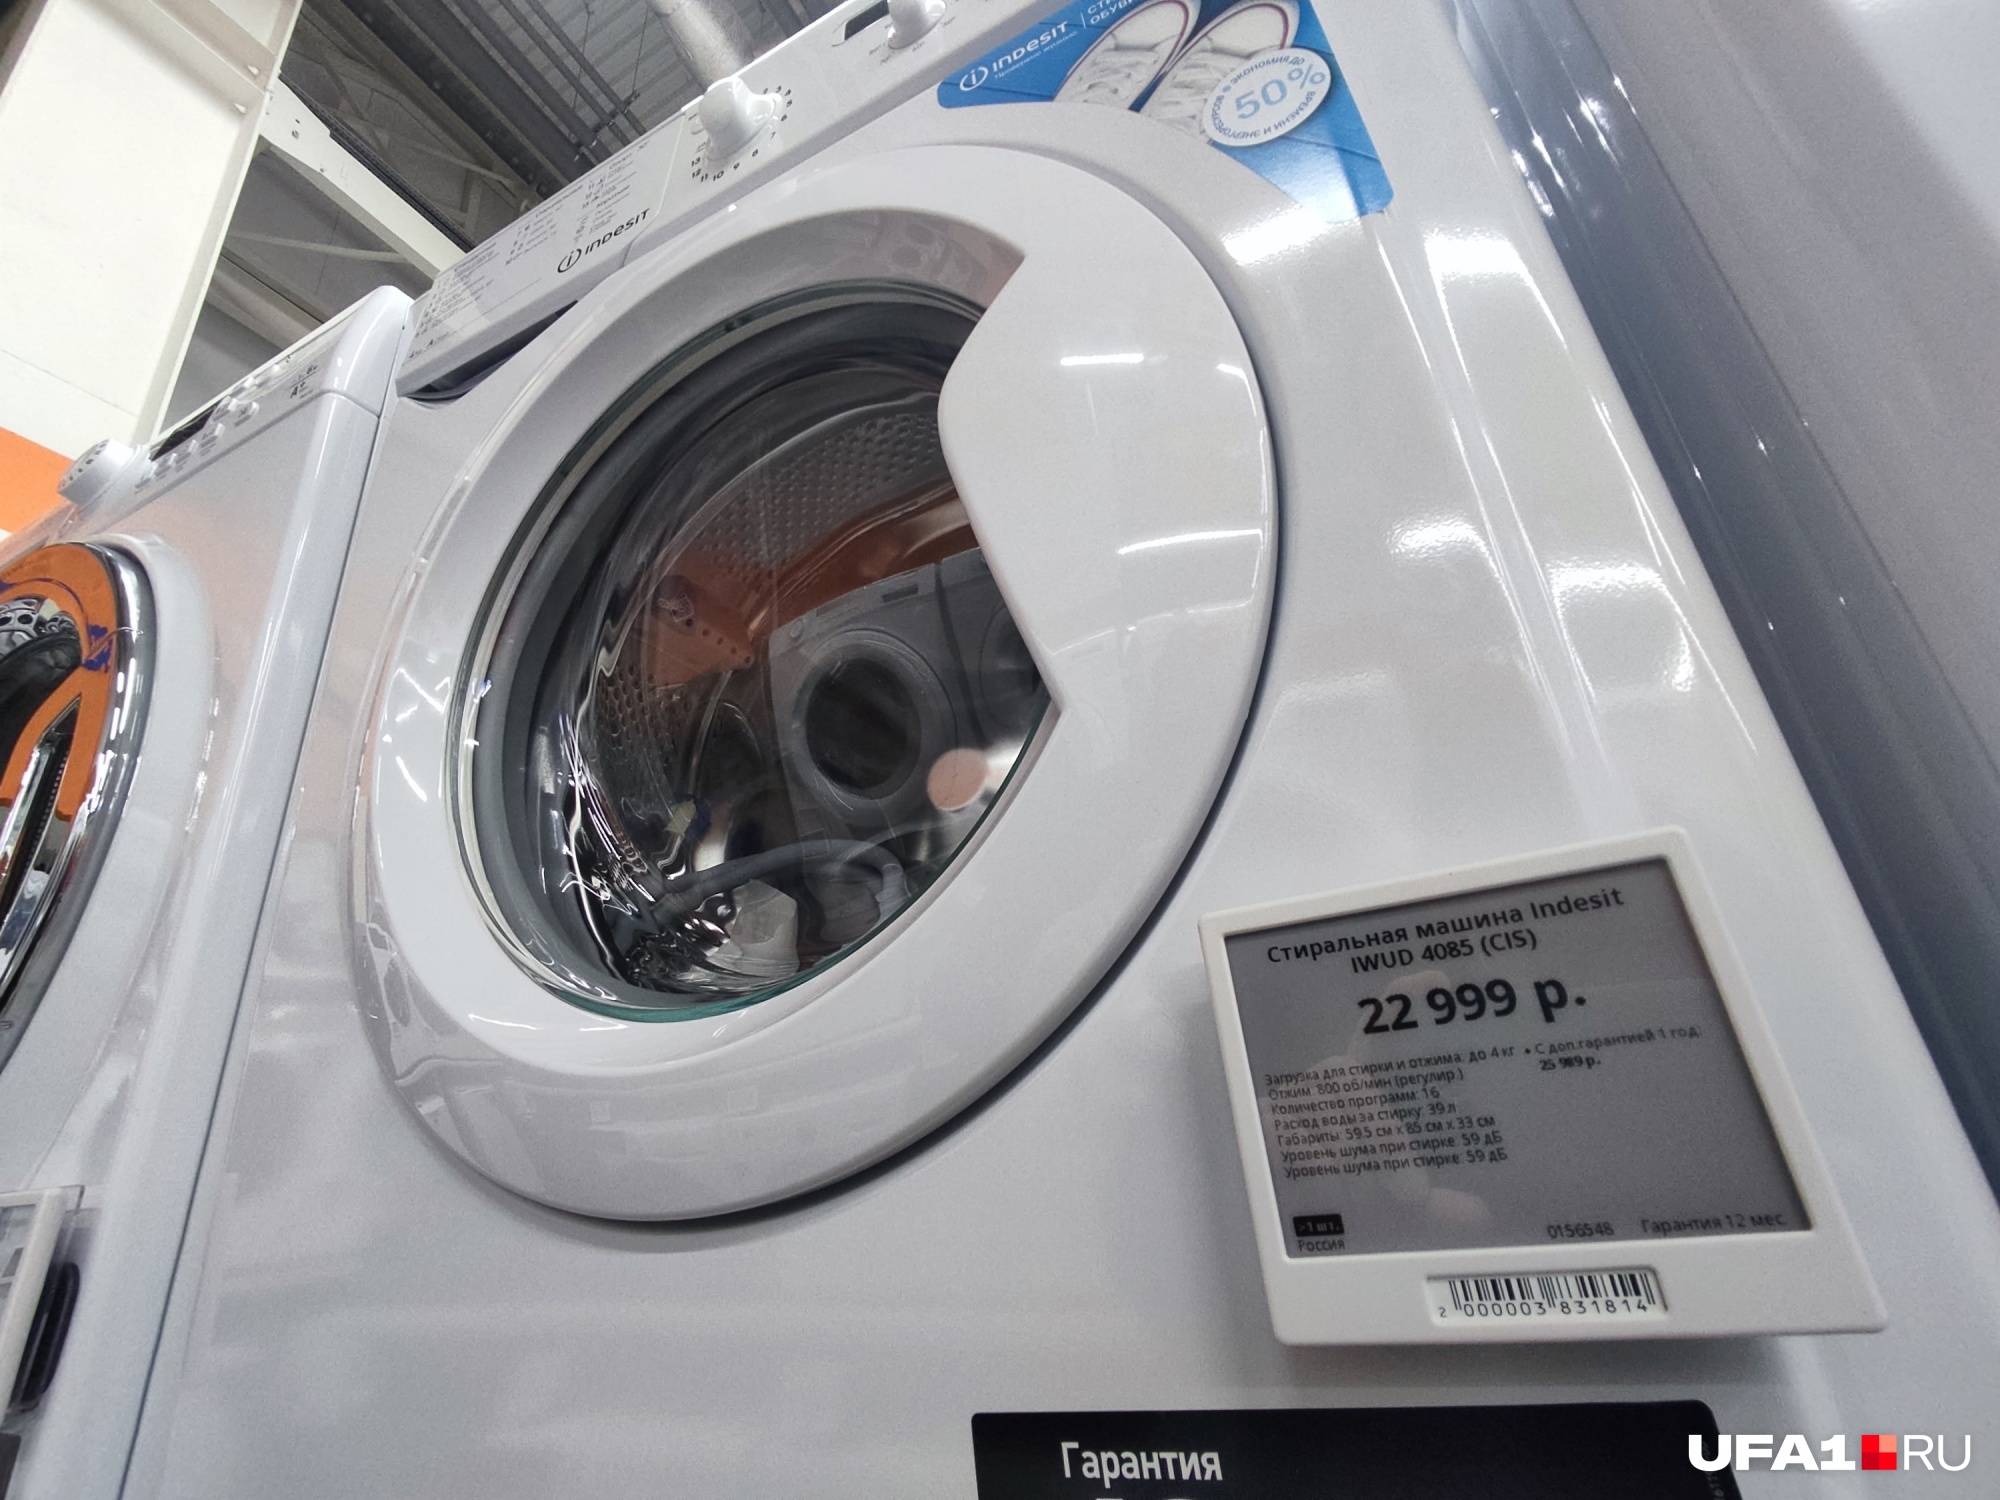 Консультант советует покупать стиральную машину Indesit